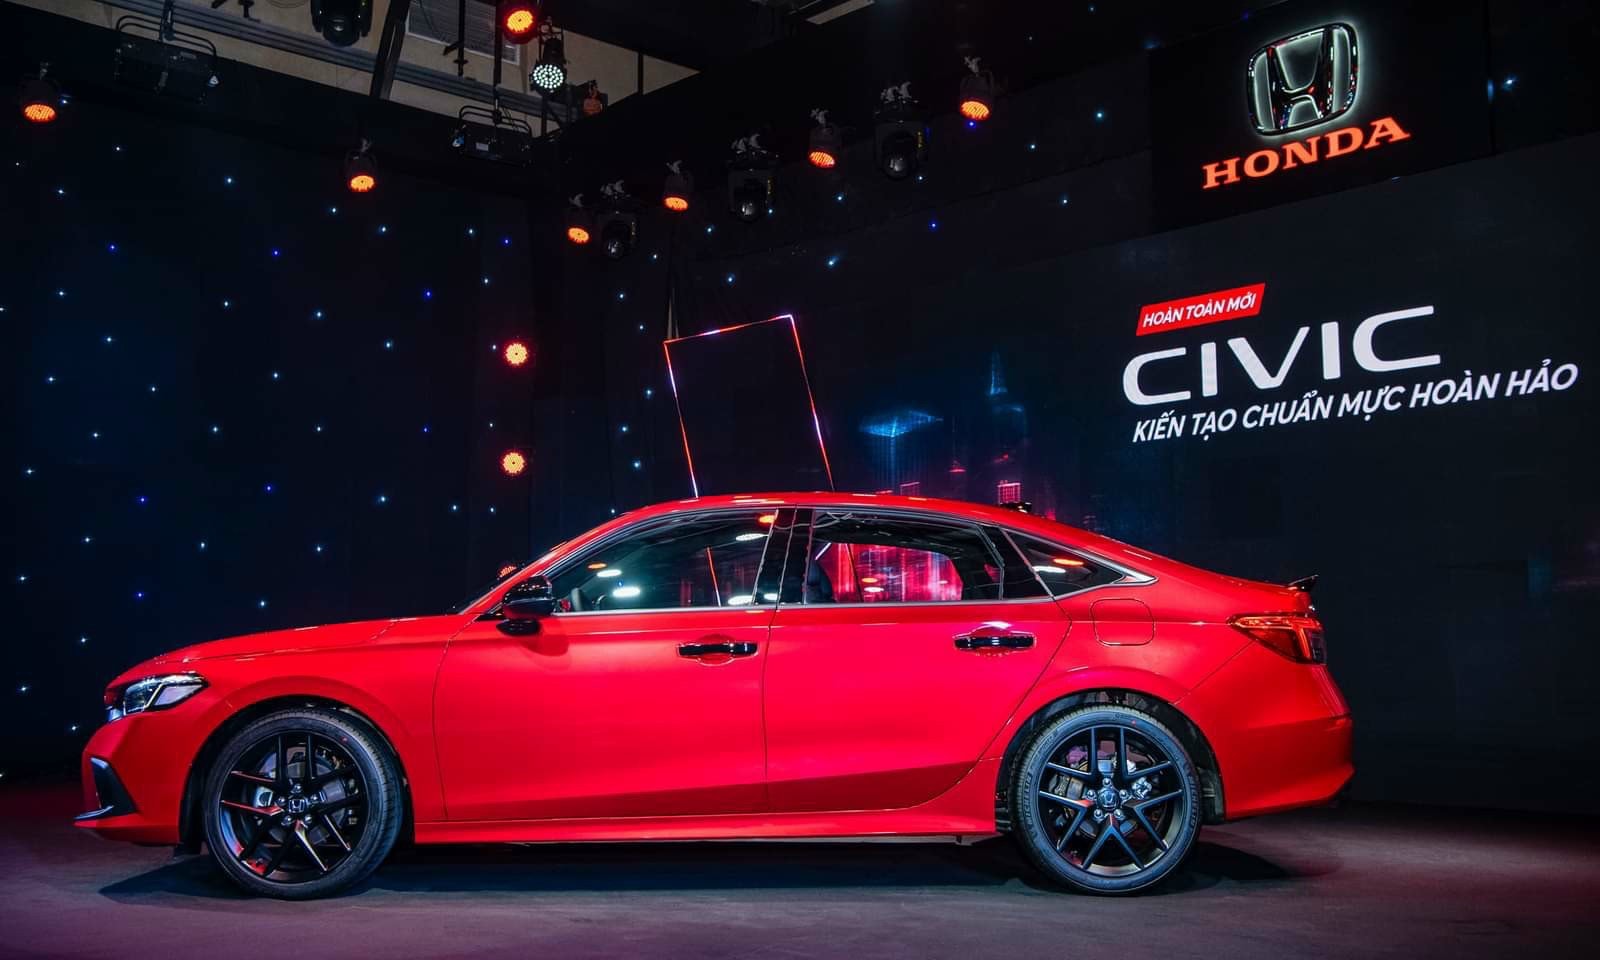 Honda Civic thế hệ 11 được giới thiệu lần đầu tại Mỹ vào tháng 4/2021